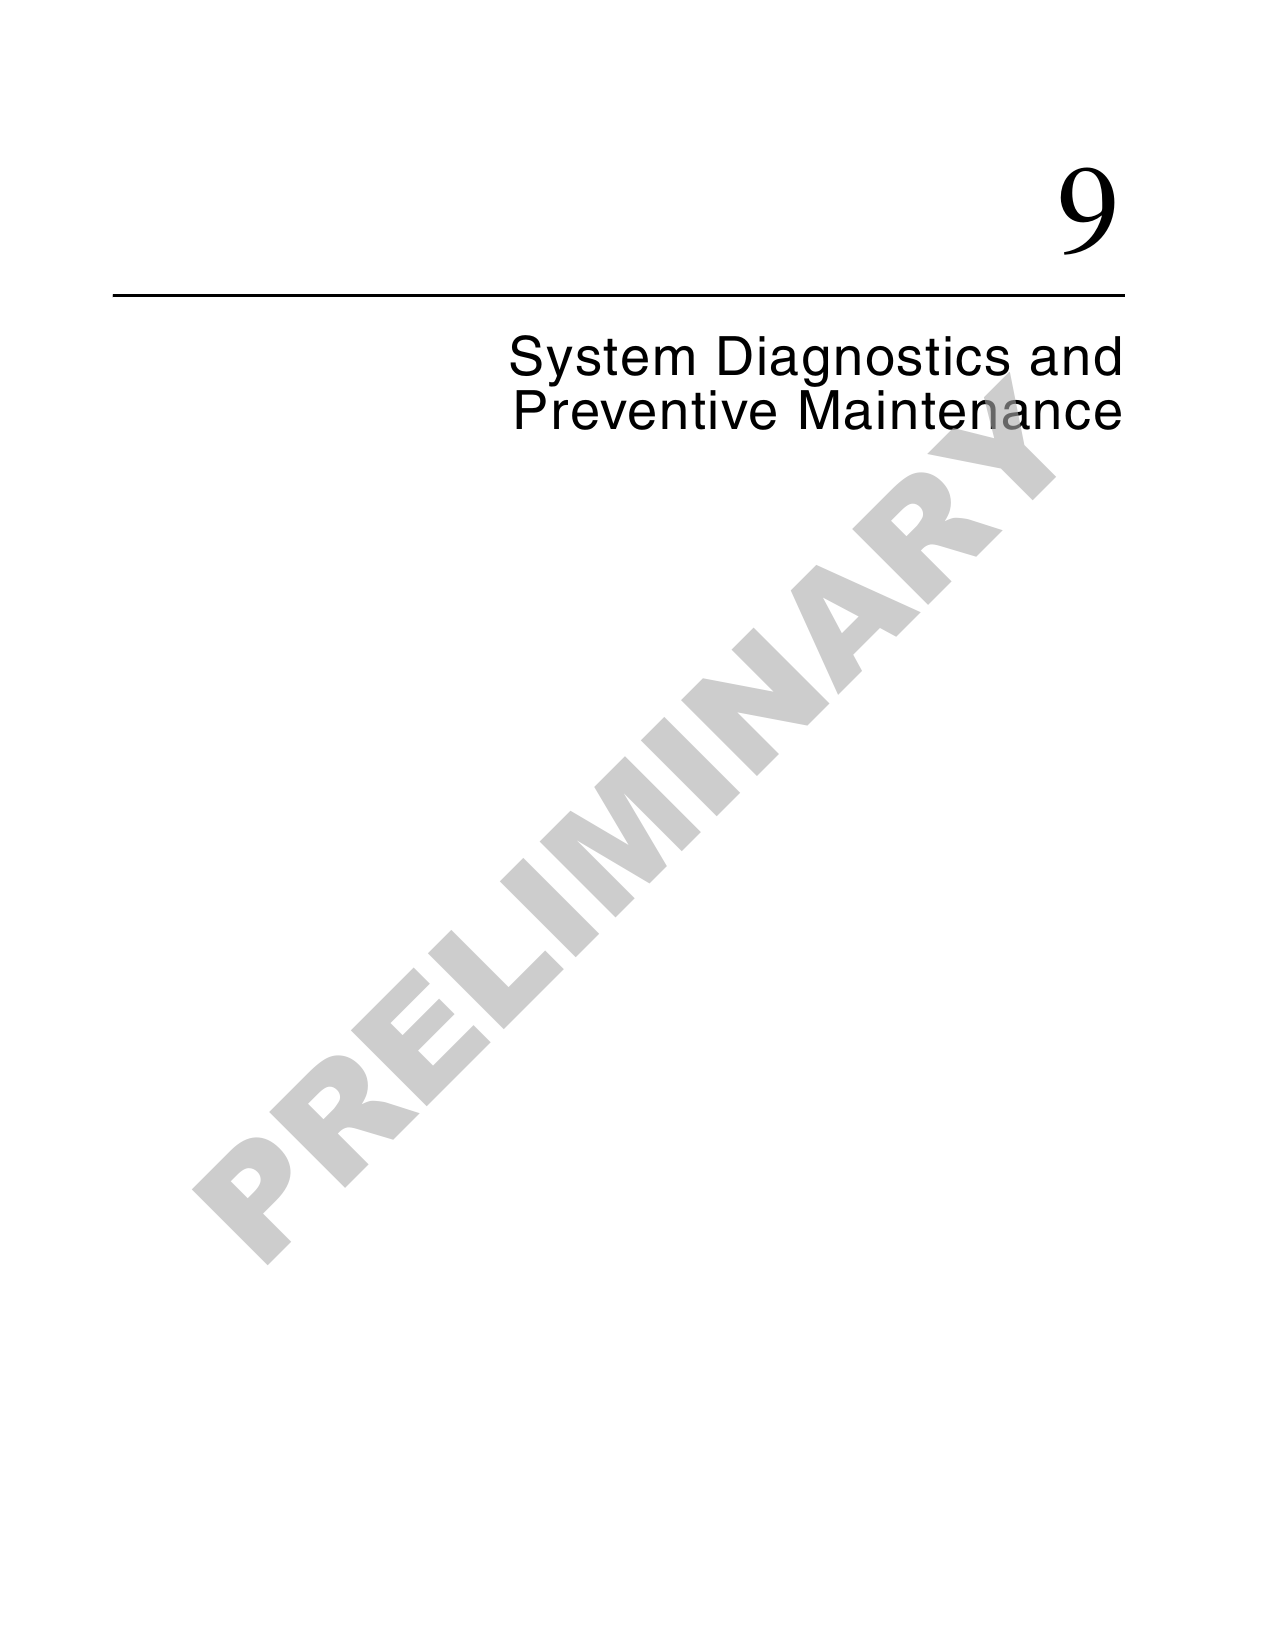 9System Diagnostics and Preventive MaintenancePRELIMINARY